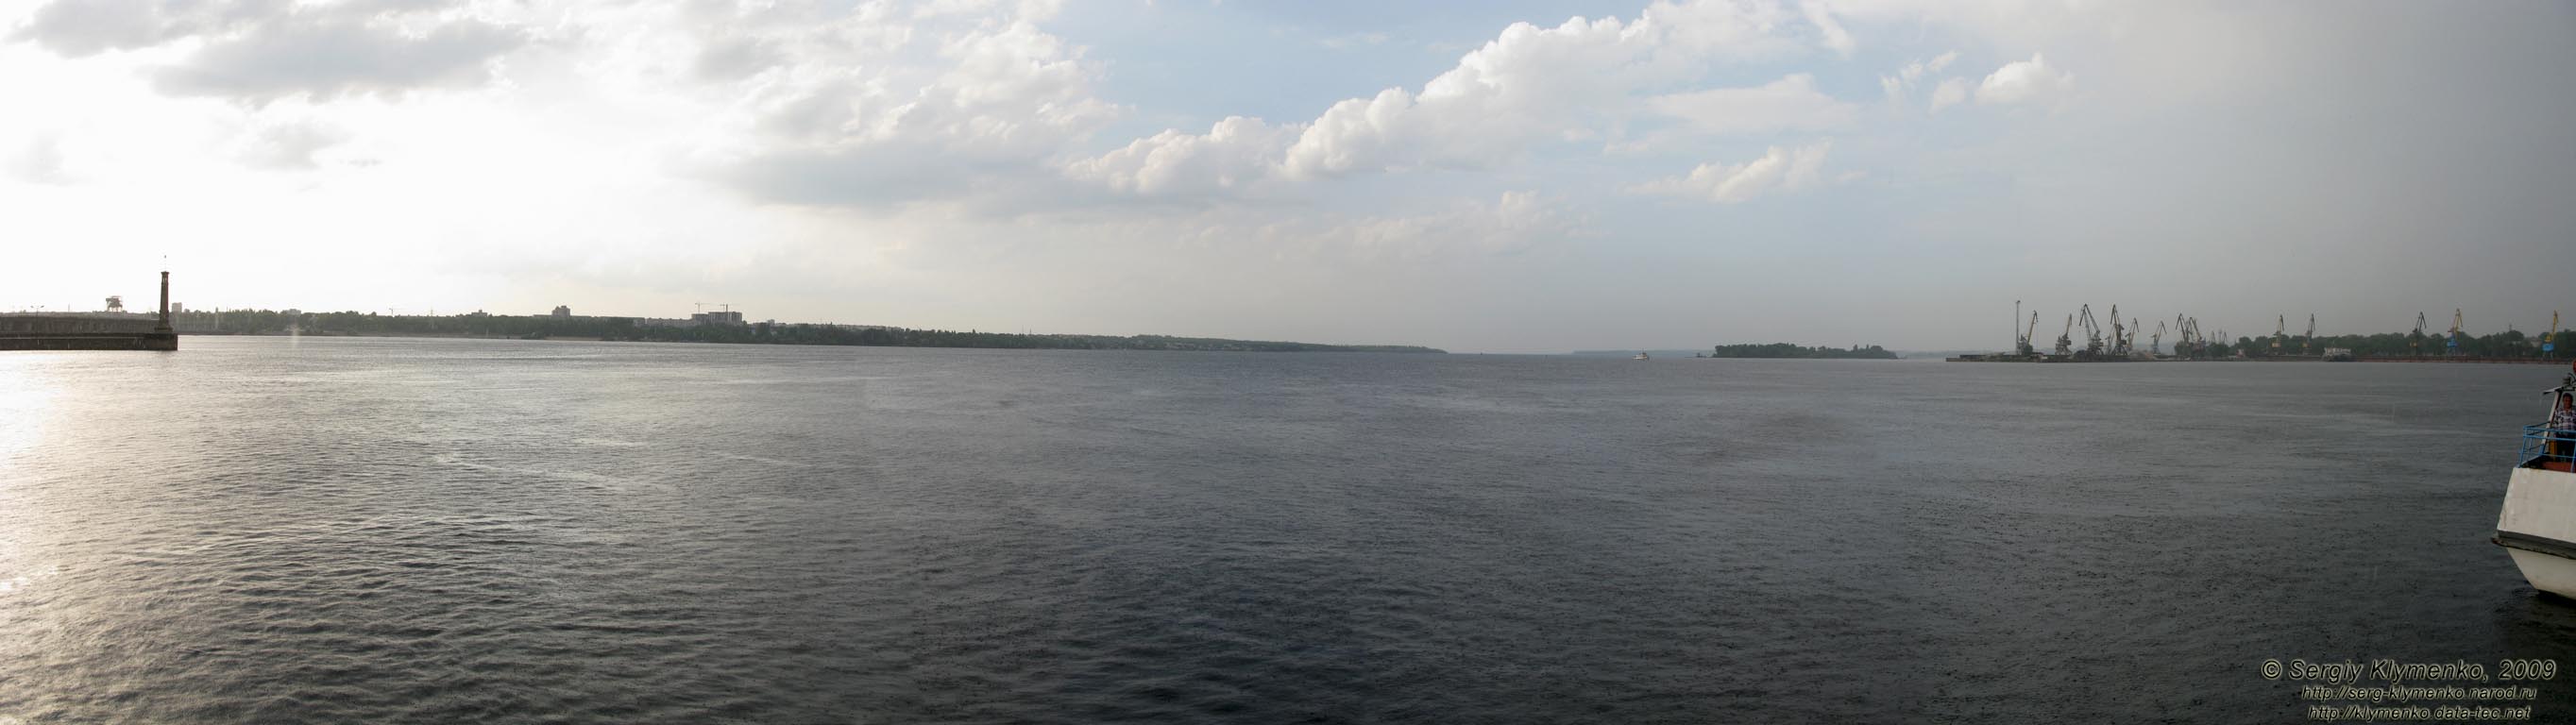 Запорожье. Фото. Вид со стороны речного вокзала (выше плотины ДнепроГЭС) на правый берег Днепра (панорама ~90°). Дождит...